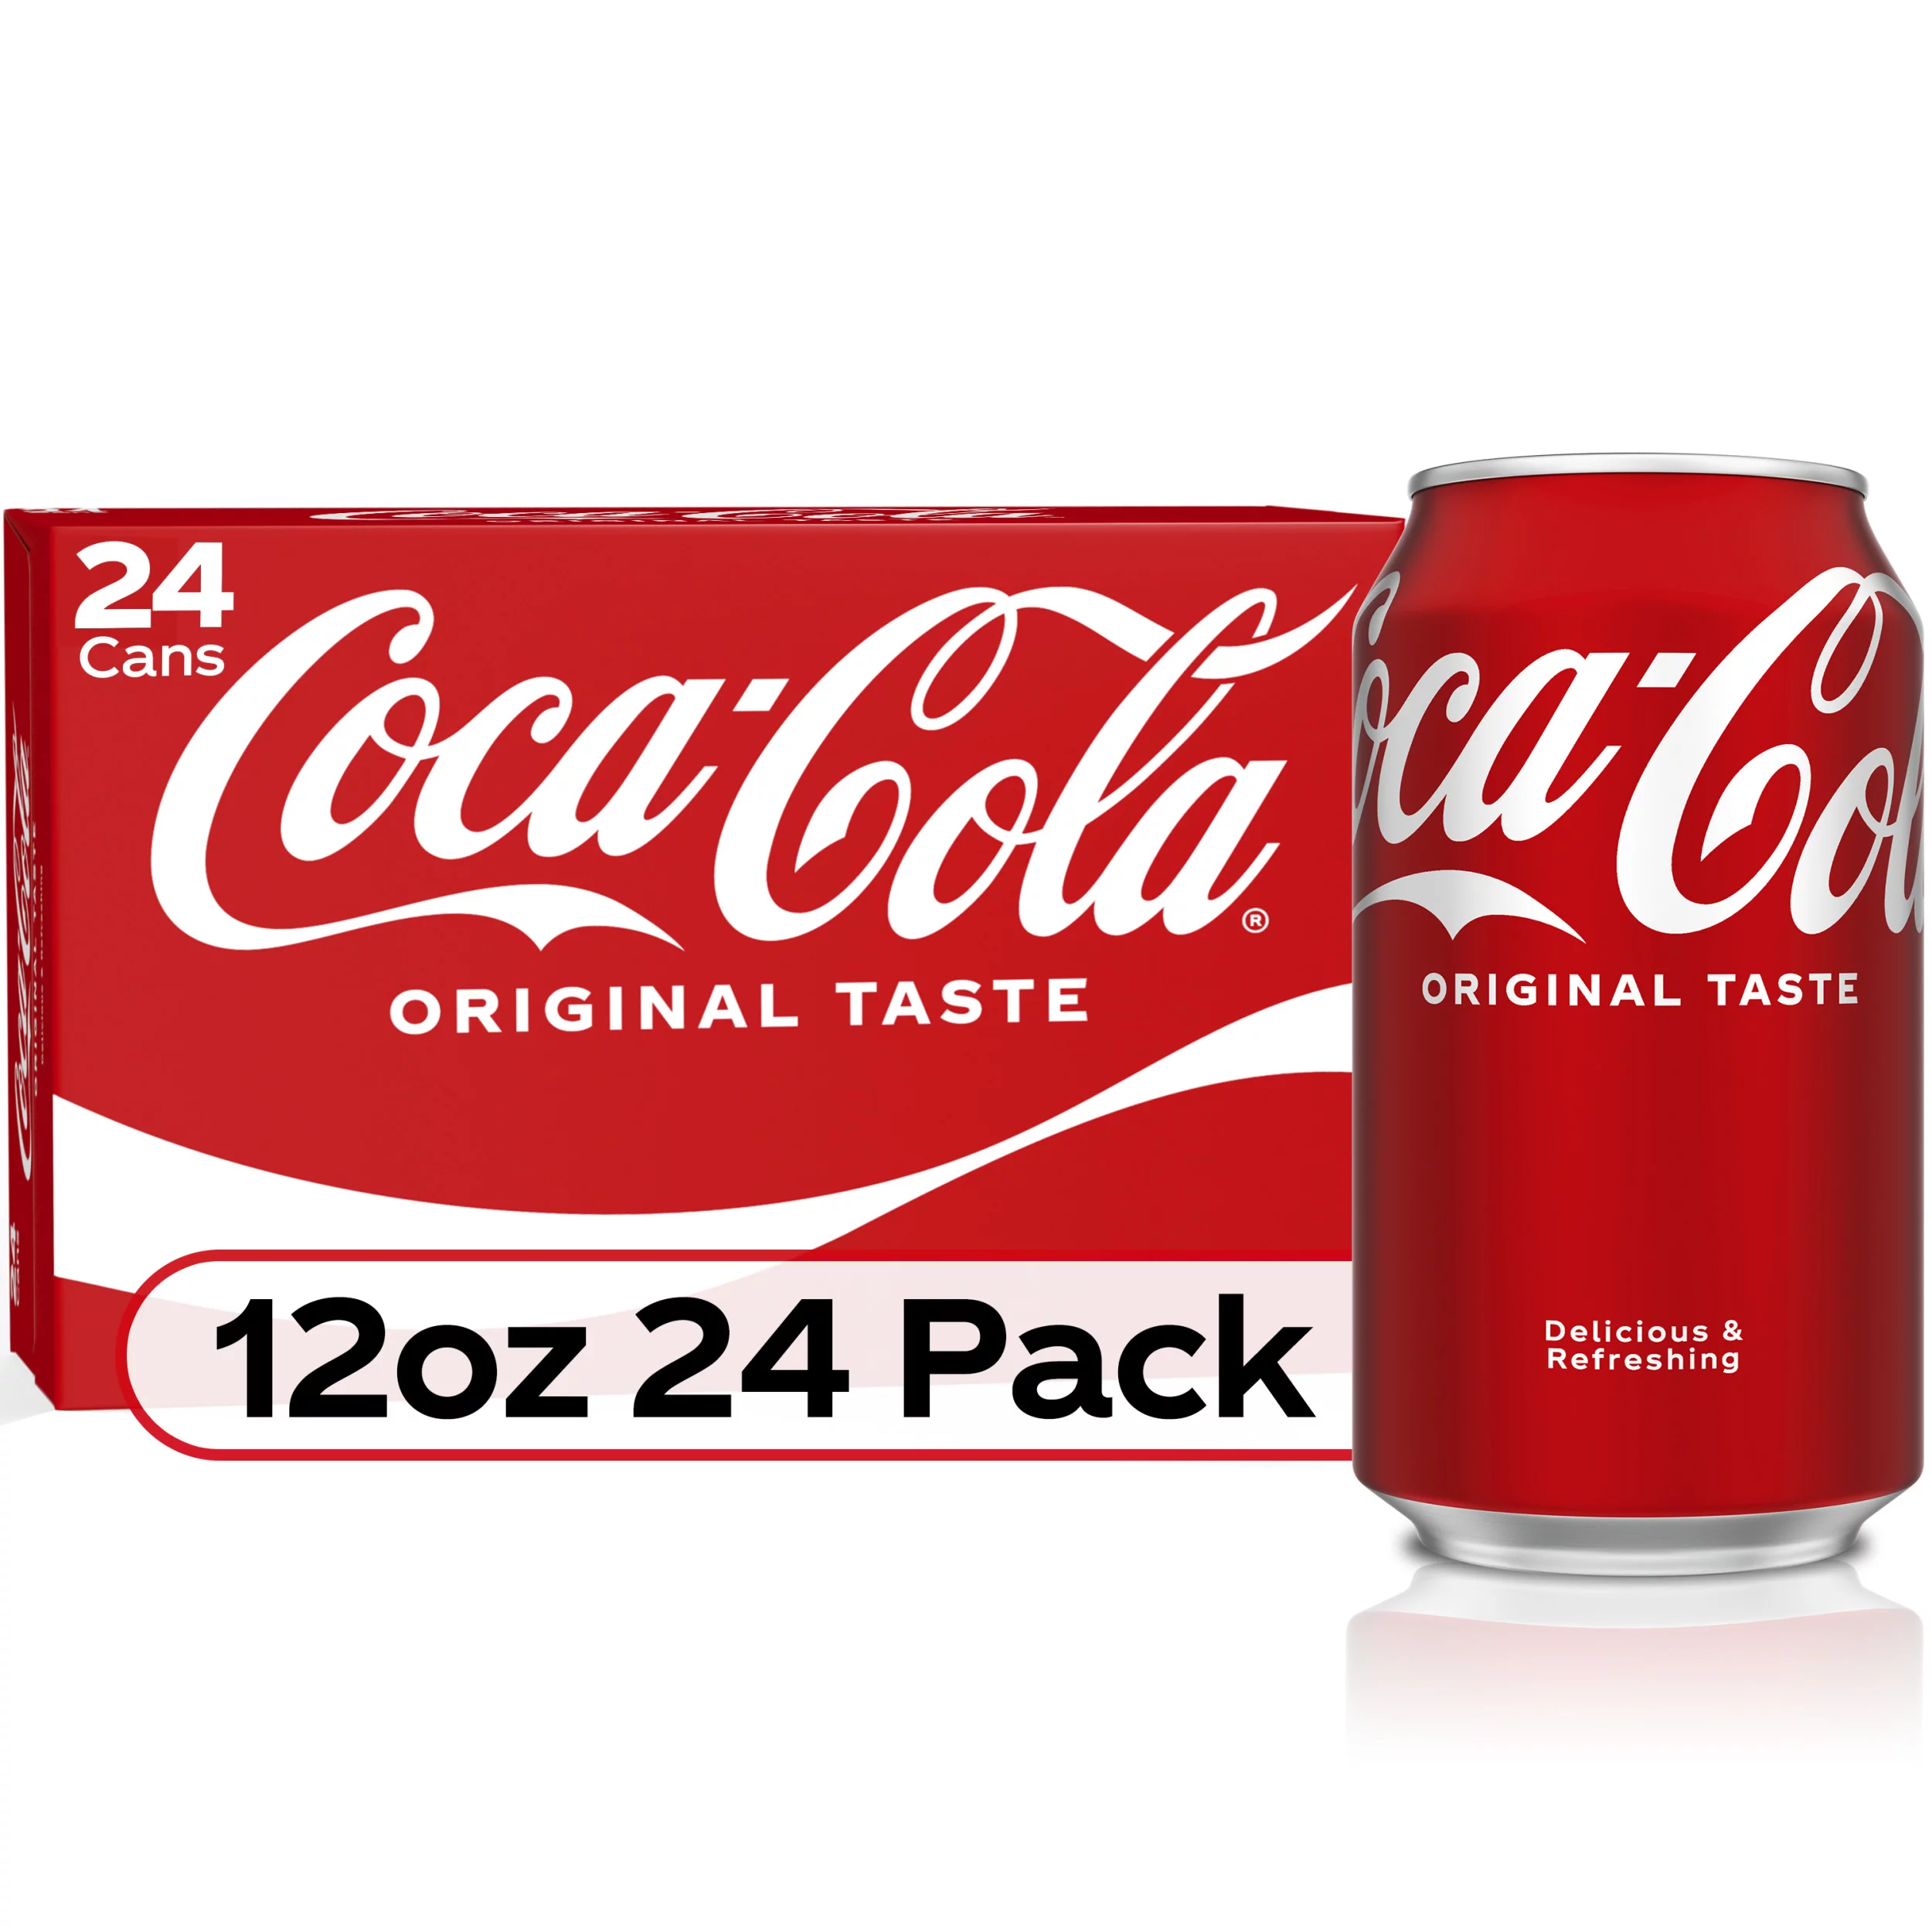 Coca-Cola Classic Soda Pop, 12 fl oz Cans, 24 Pack